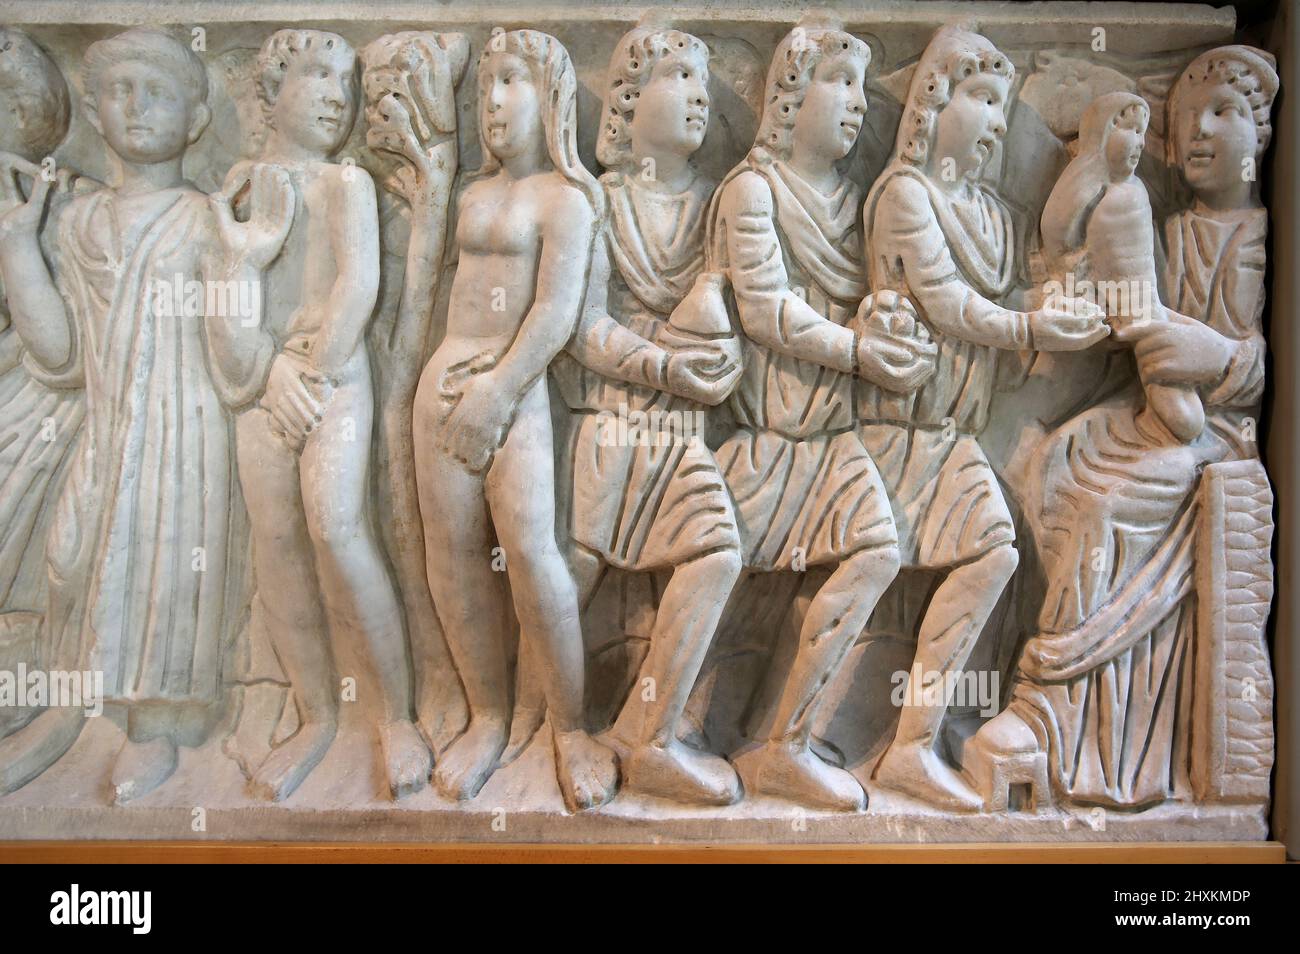 Frontplatte der Sarkophag mit biblischen Szenen. Geschnitzt in einer römischen Werkstatt, 4. c. AD. Anbetung der Könige. Frederic Mares Museum. Barcelona, Spai Stockfoto